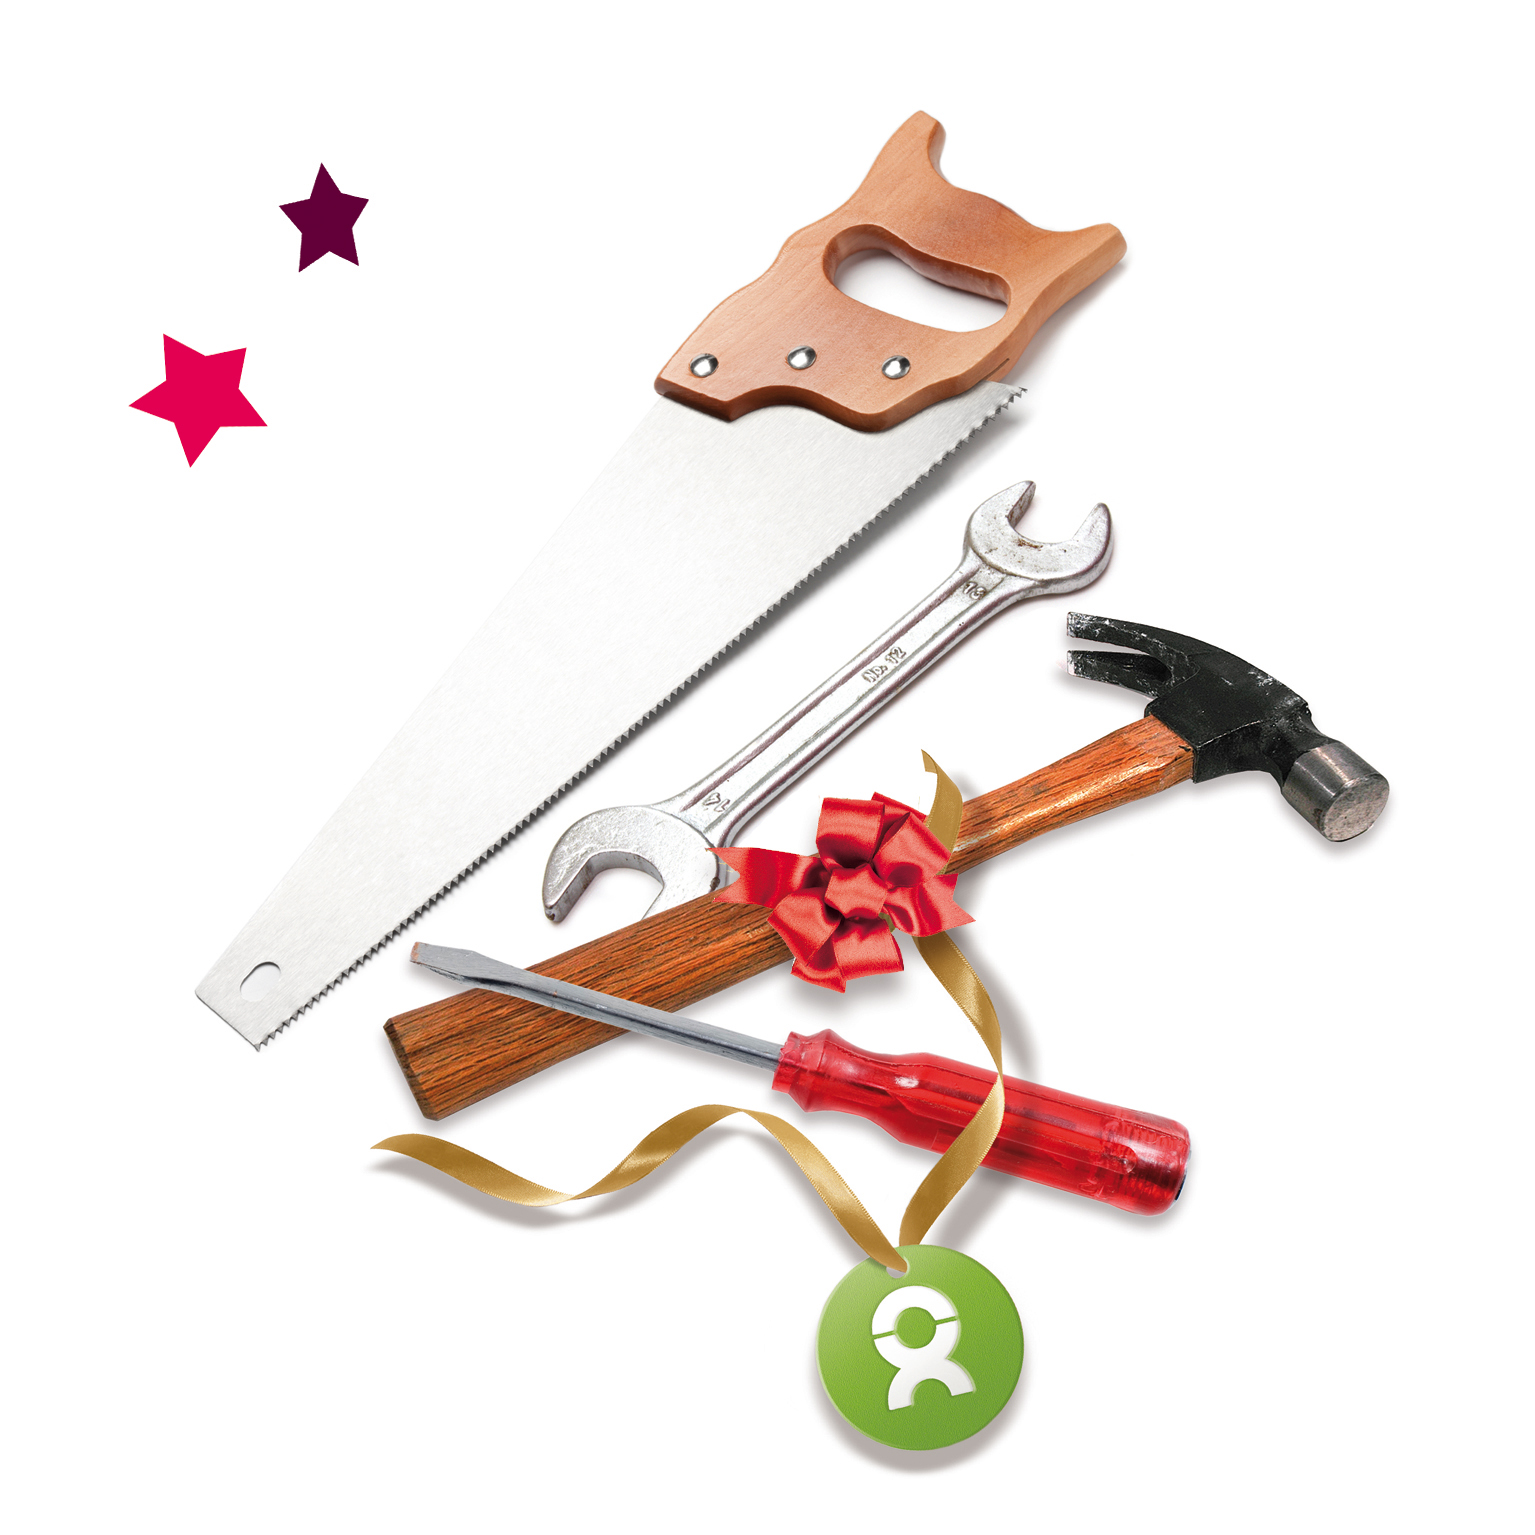 Beispiel Geschenk Spende Werkzeug zu Weihnachten: Grafik von Werkzeugset mit Säge, Schraubschlüssel, Hammer und Schraubenzieher, verziert mit Geschenkband